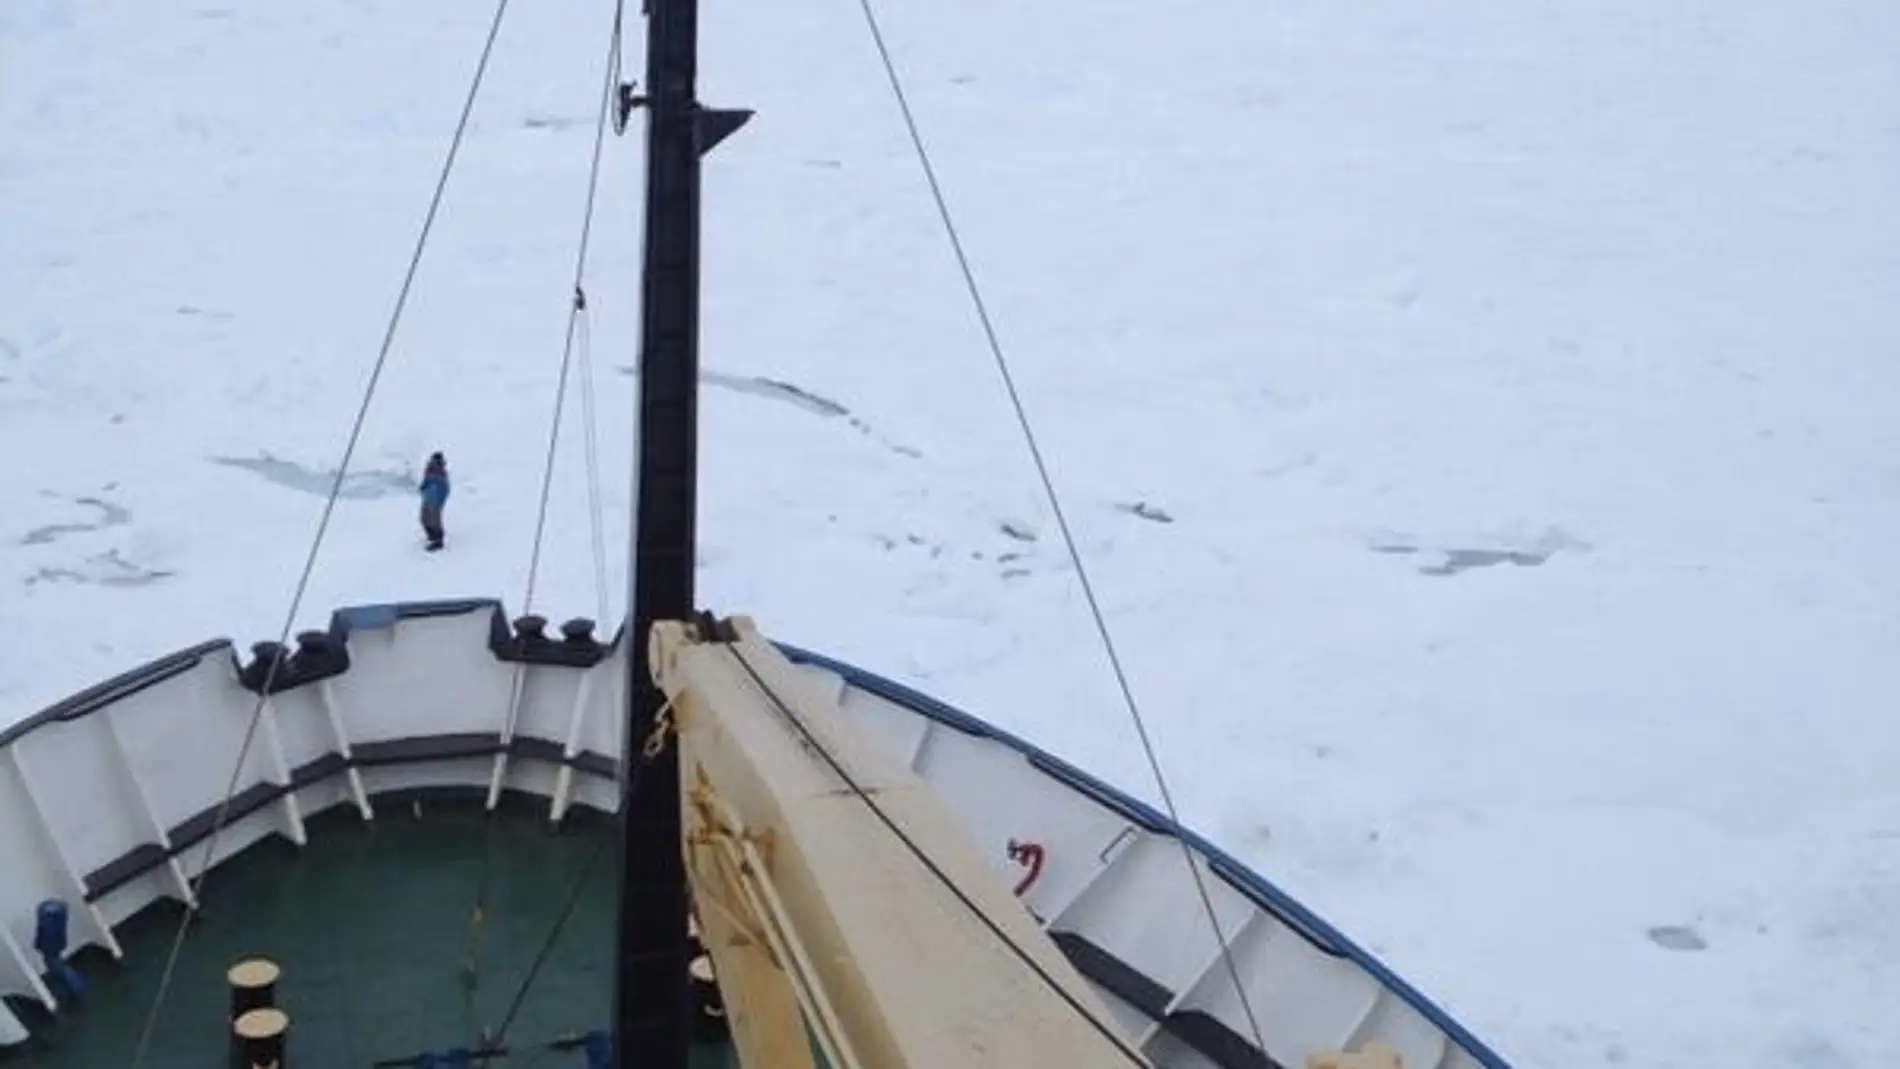 Imagen del Akademik Shokalskiy atrapado en el hielo